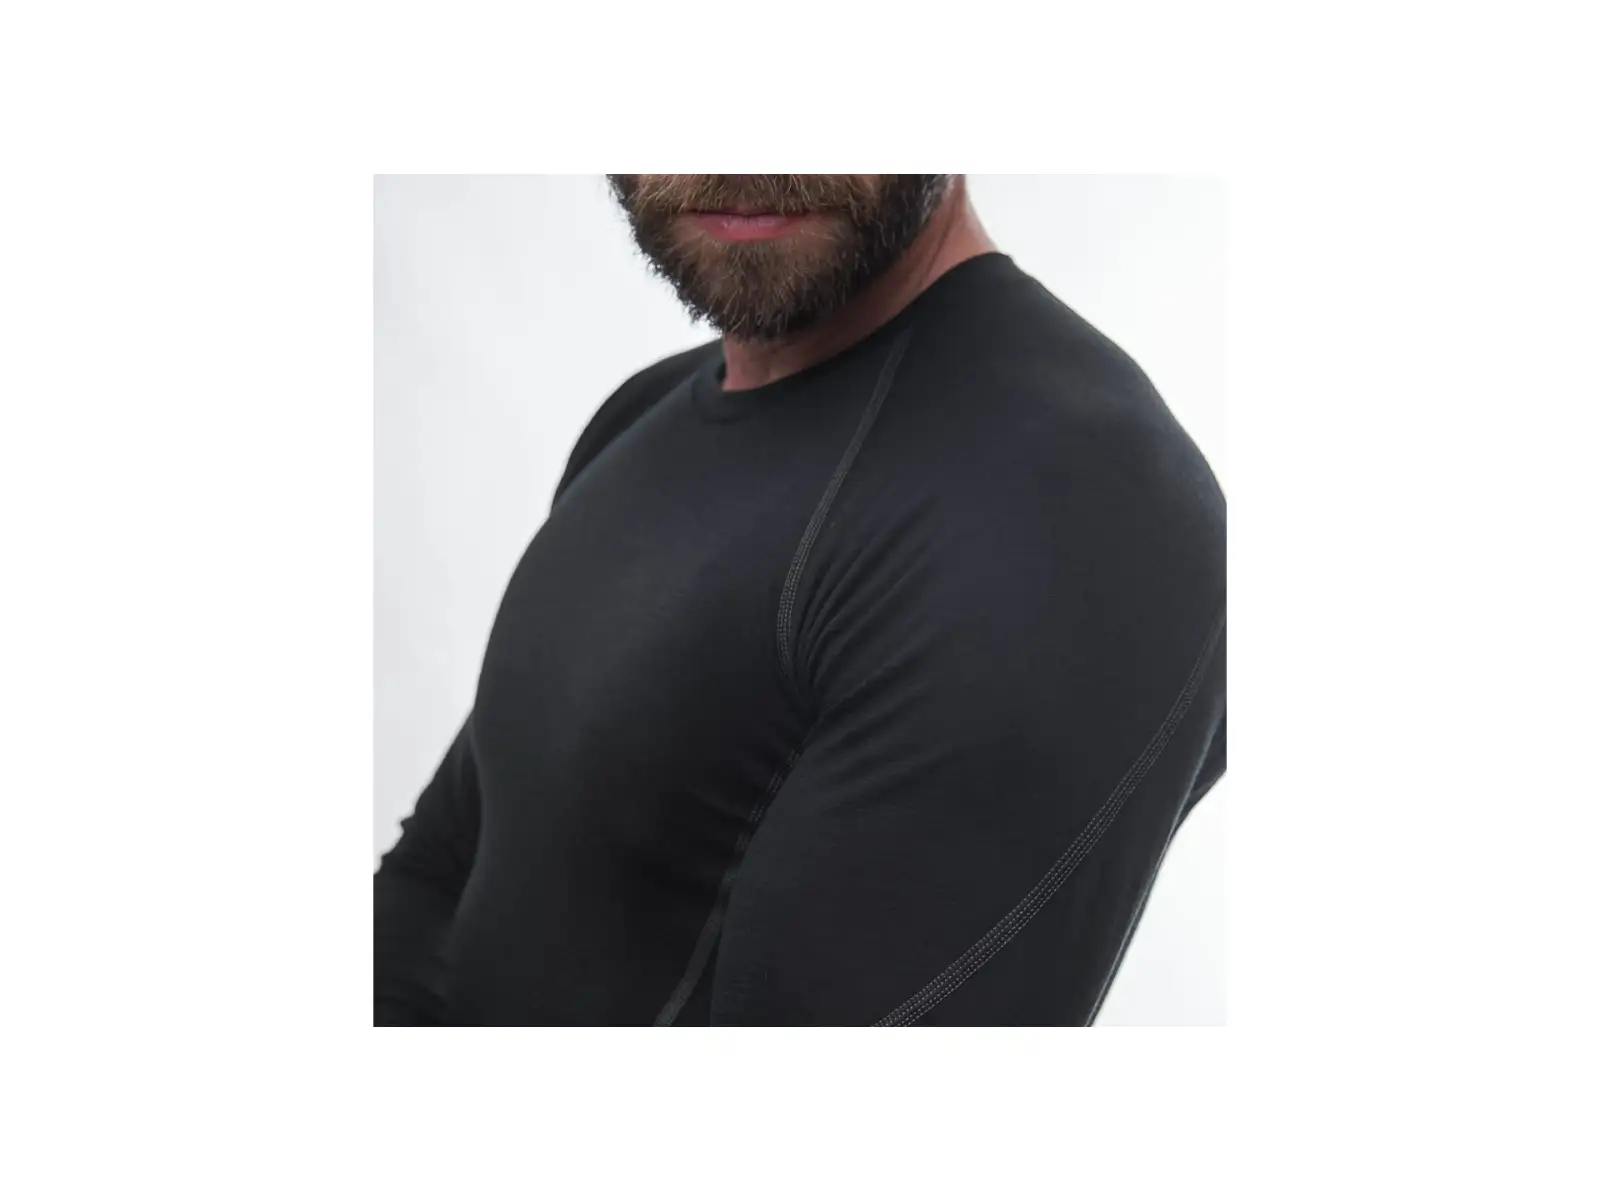 Sensor Merino Active pánske tričko s dlhým rukávom čierne